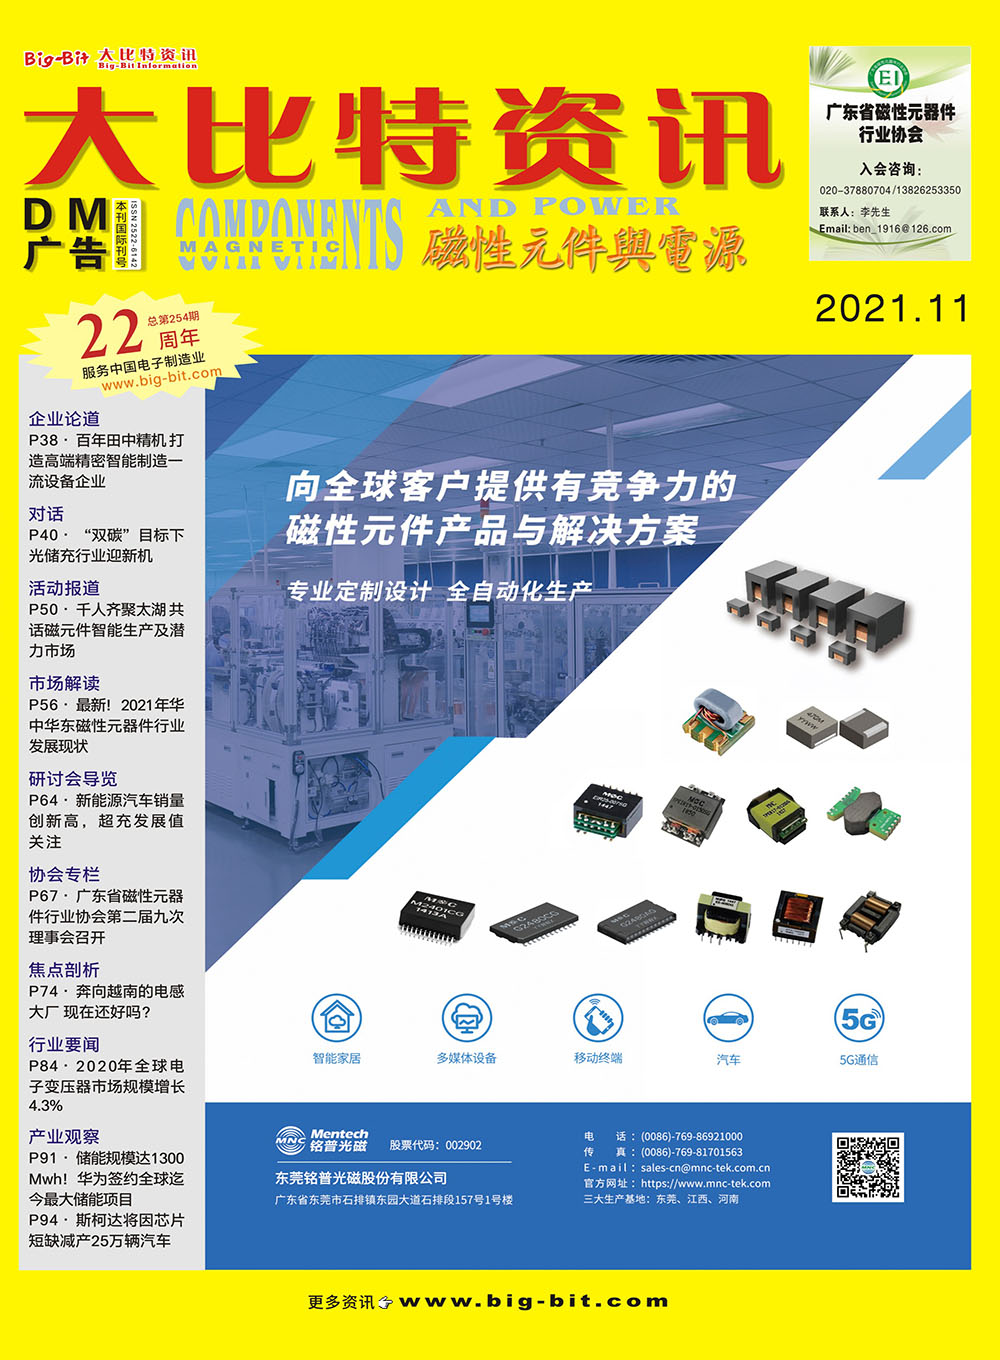 《磁性元件與電源》雜志2021年11月刊